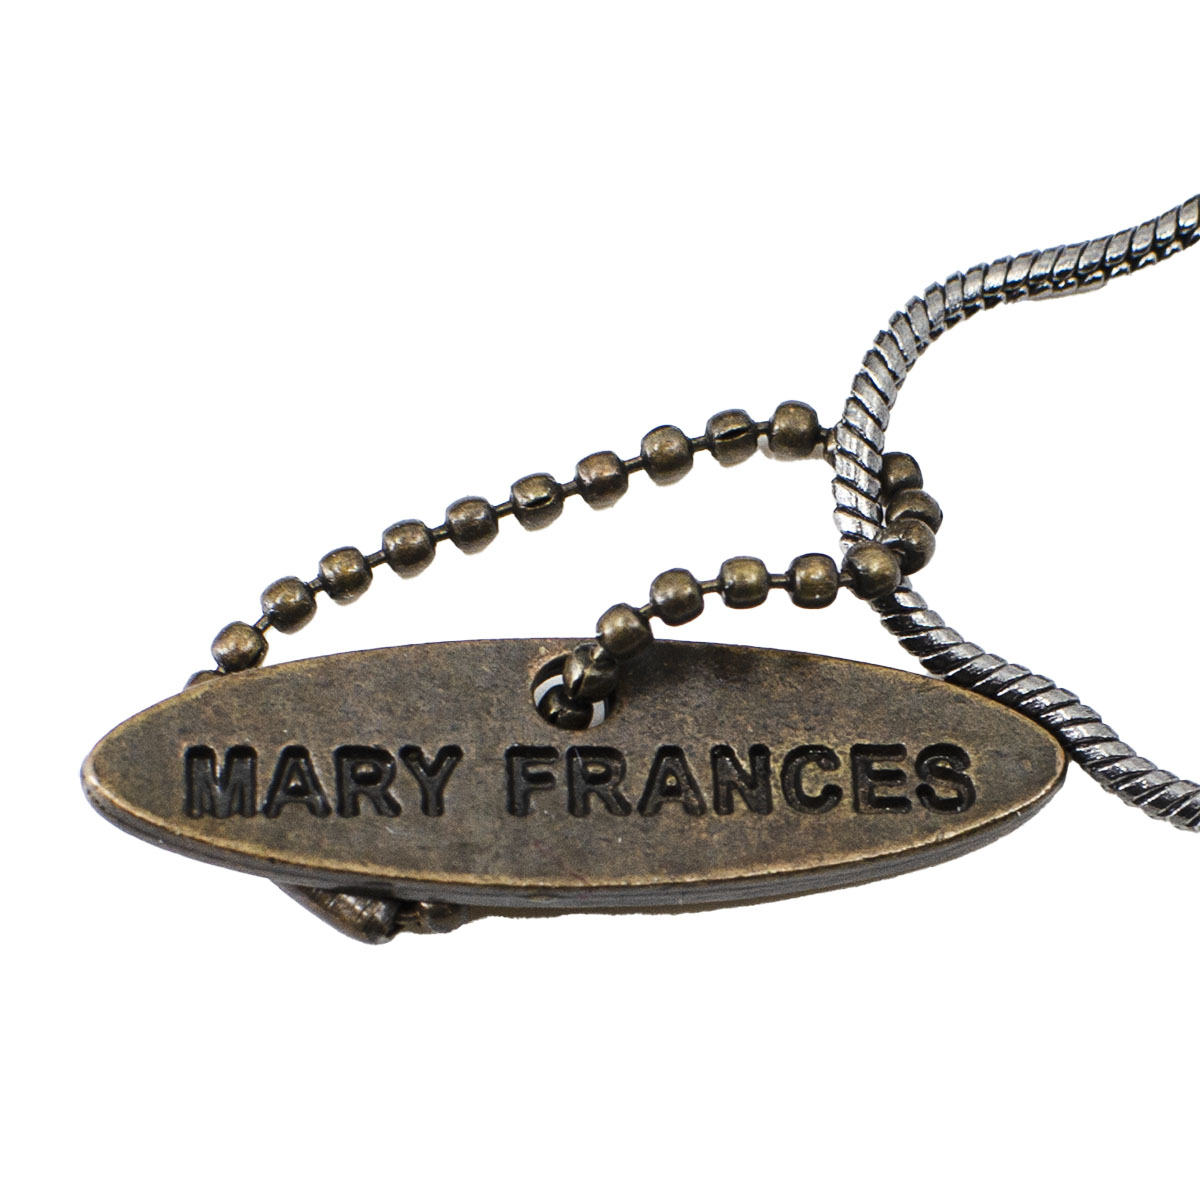 Mary Frances mark